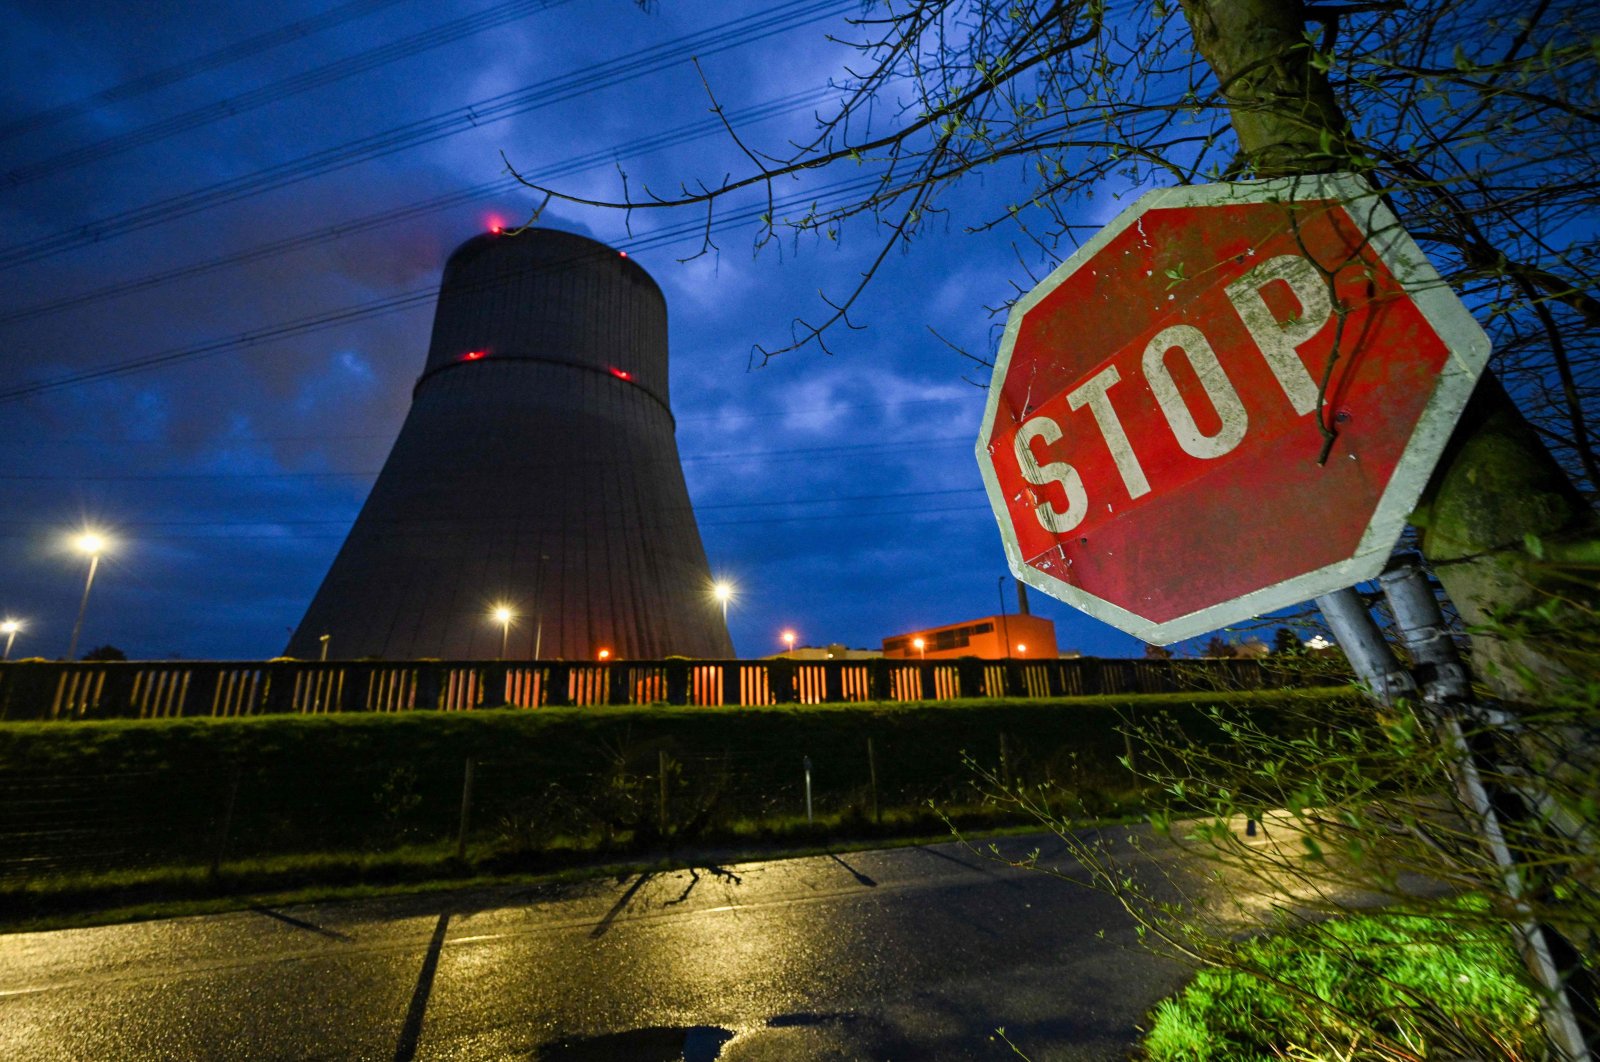 Jerman akan menutup pembangkit listrik tenaga nuklir terakhir yang tersisa